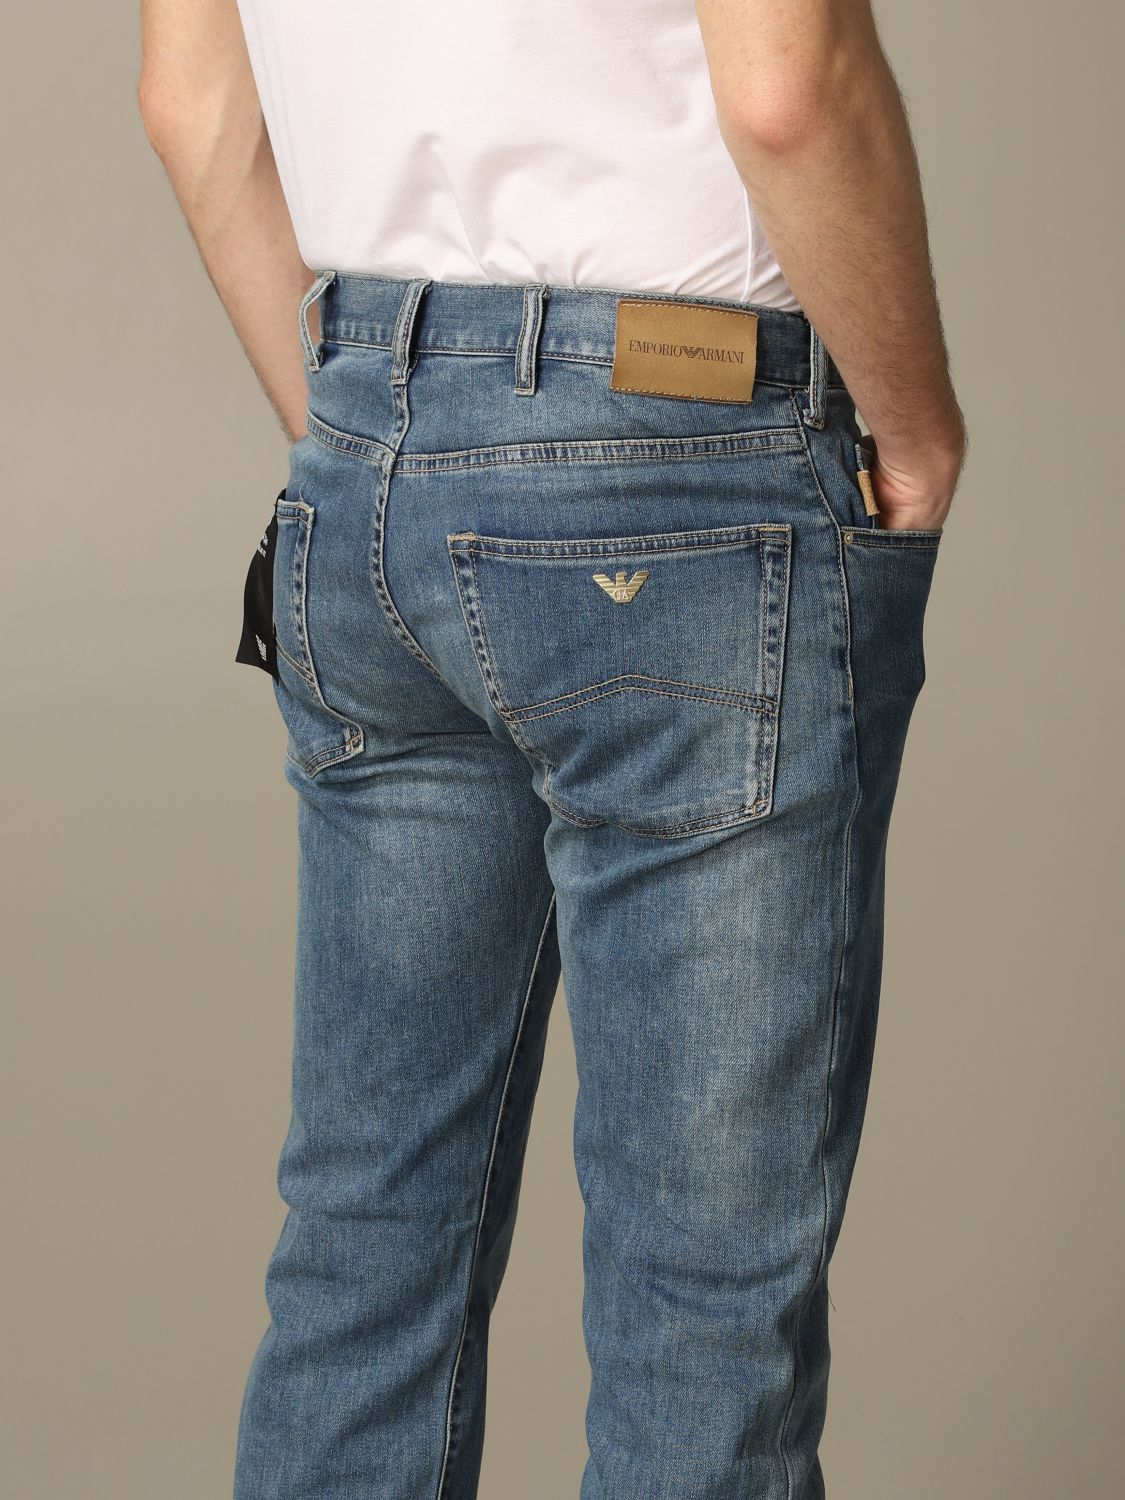 armani jeans emporio